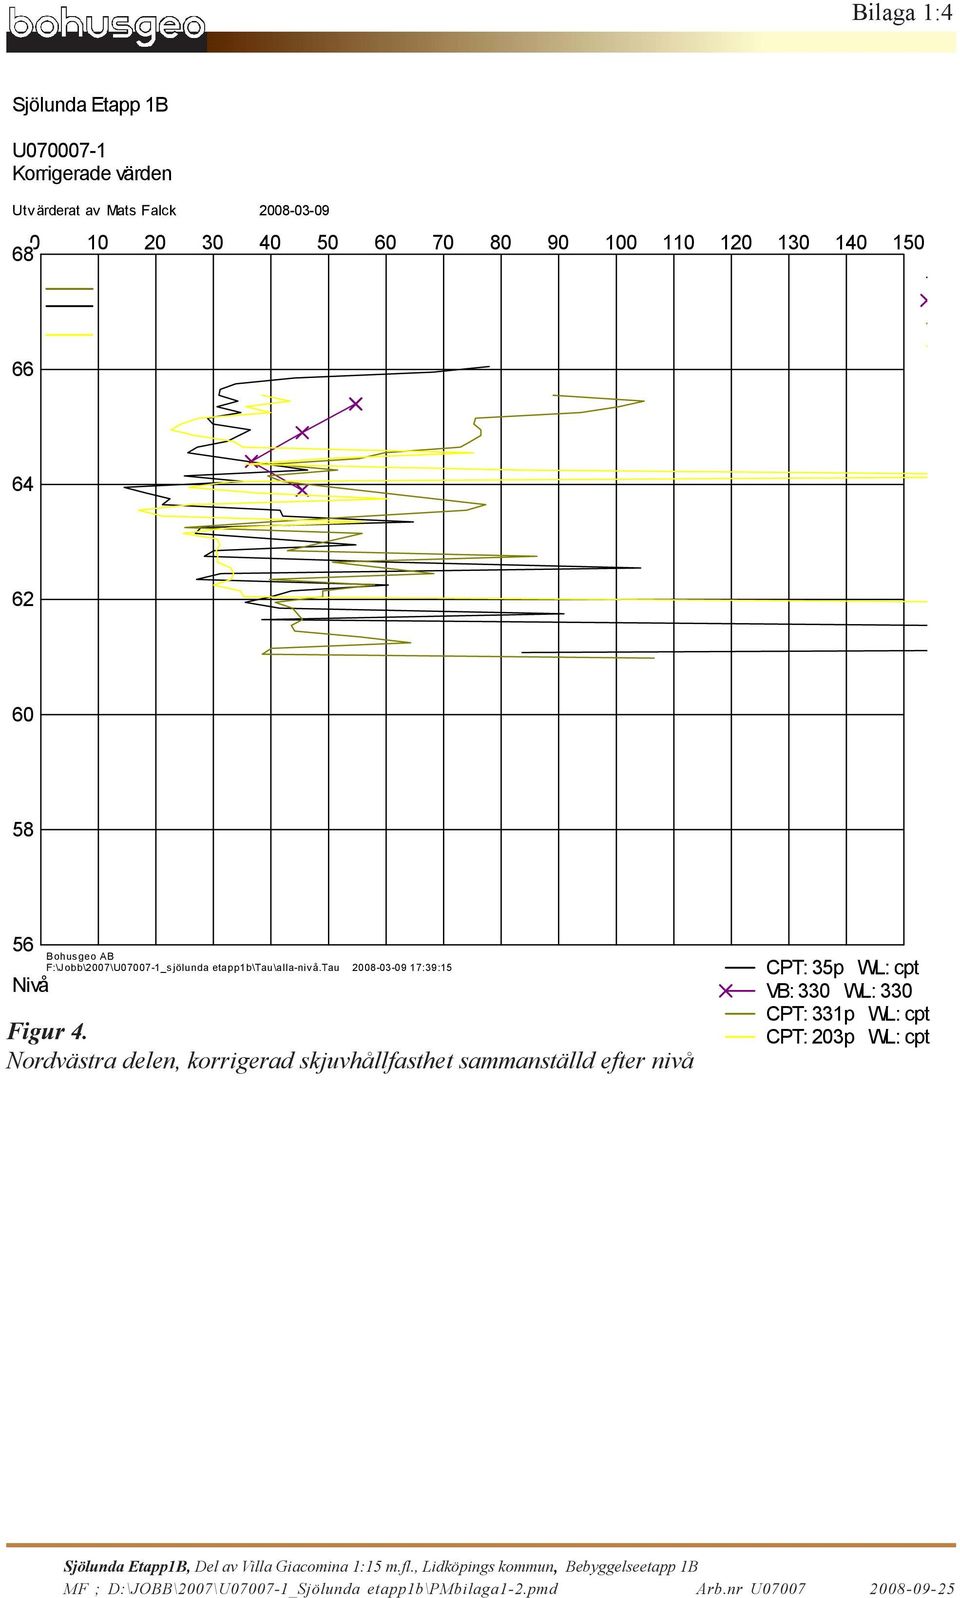 Nordvästra delen, korrigerad skjuvhållfasthet sammanställd efter nivå CPT: p WL: cpt VB: WL: CPT: p WL: cpt